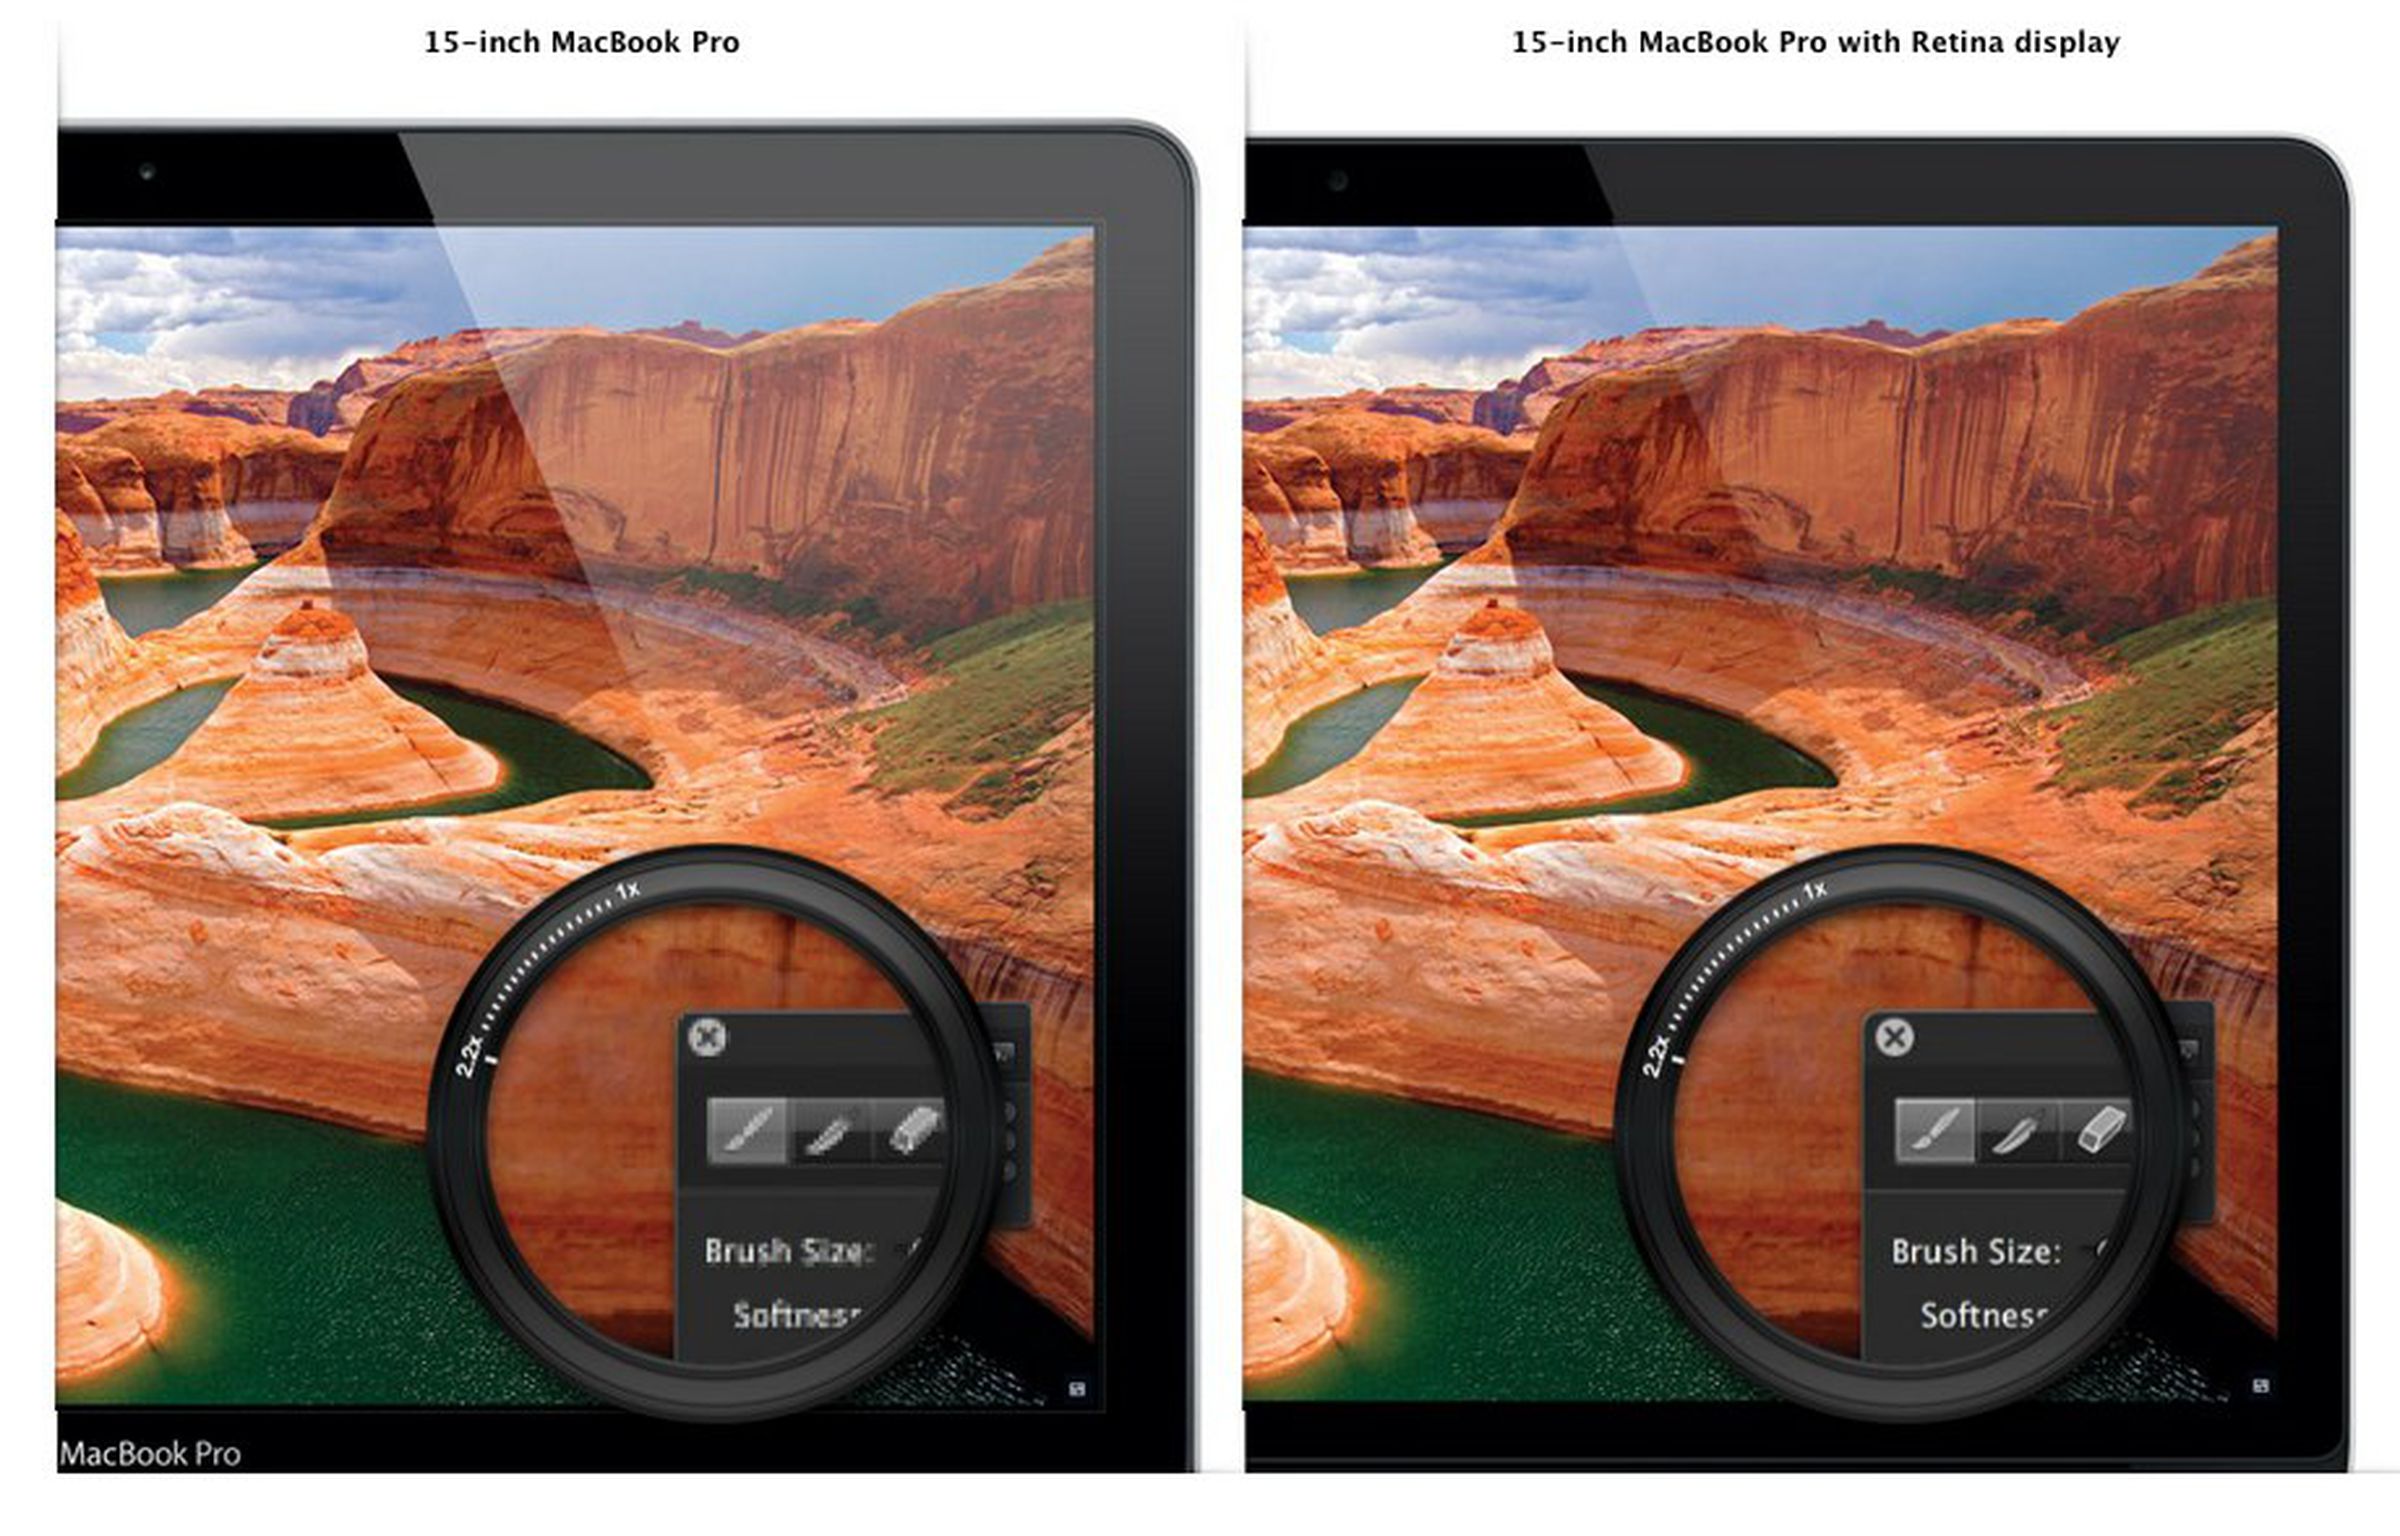 MacBook Pro with Retina display press photos